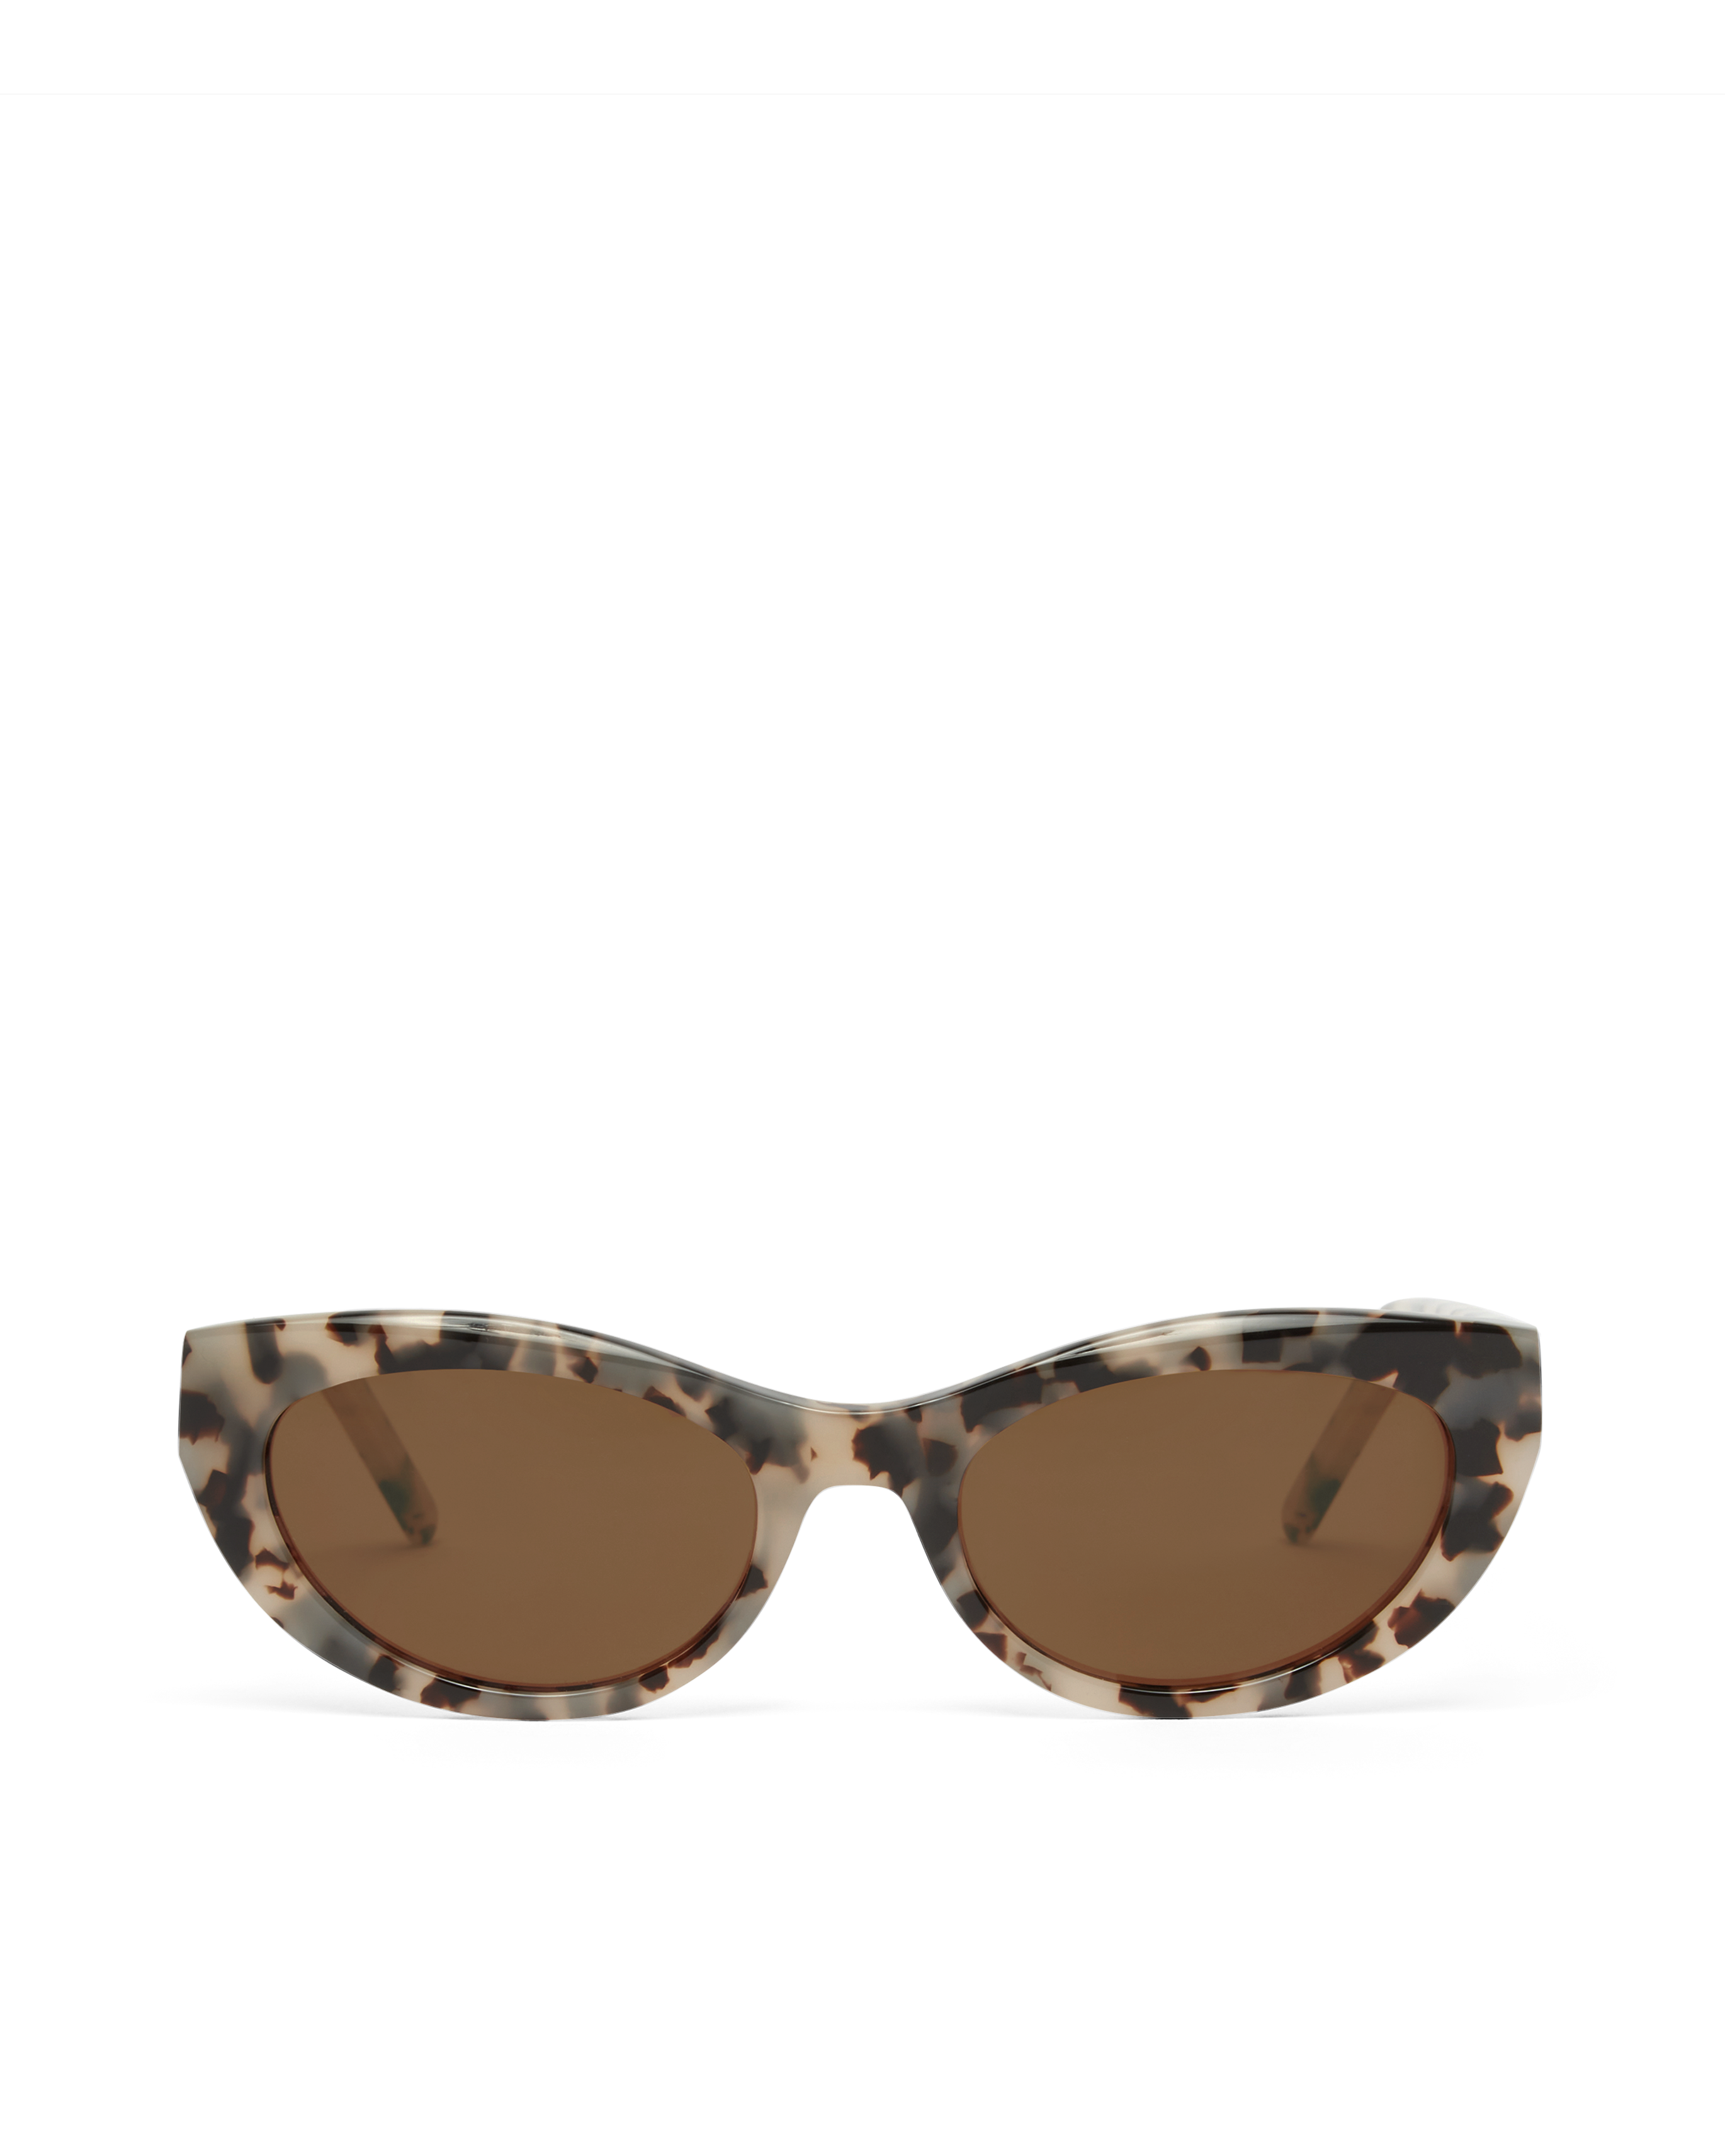 The Estella Sunglasses - Blonde Tort